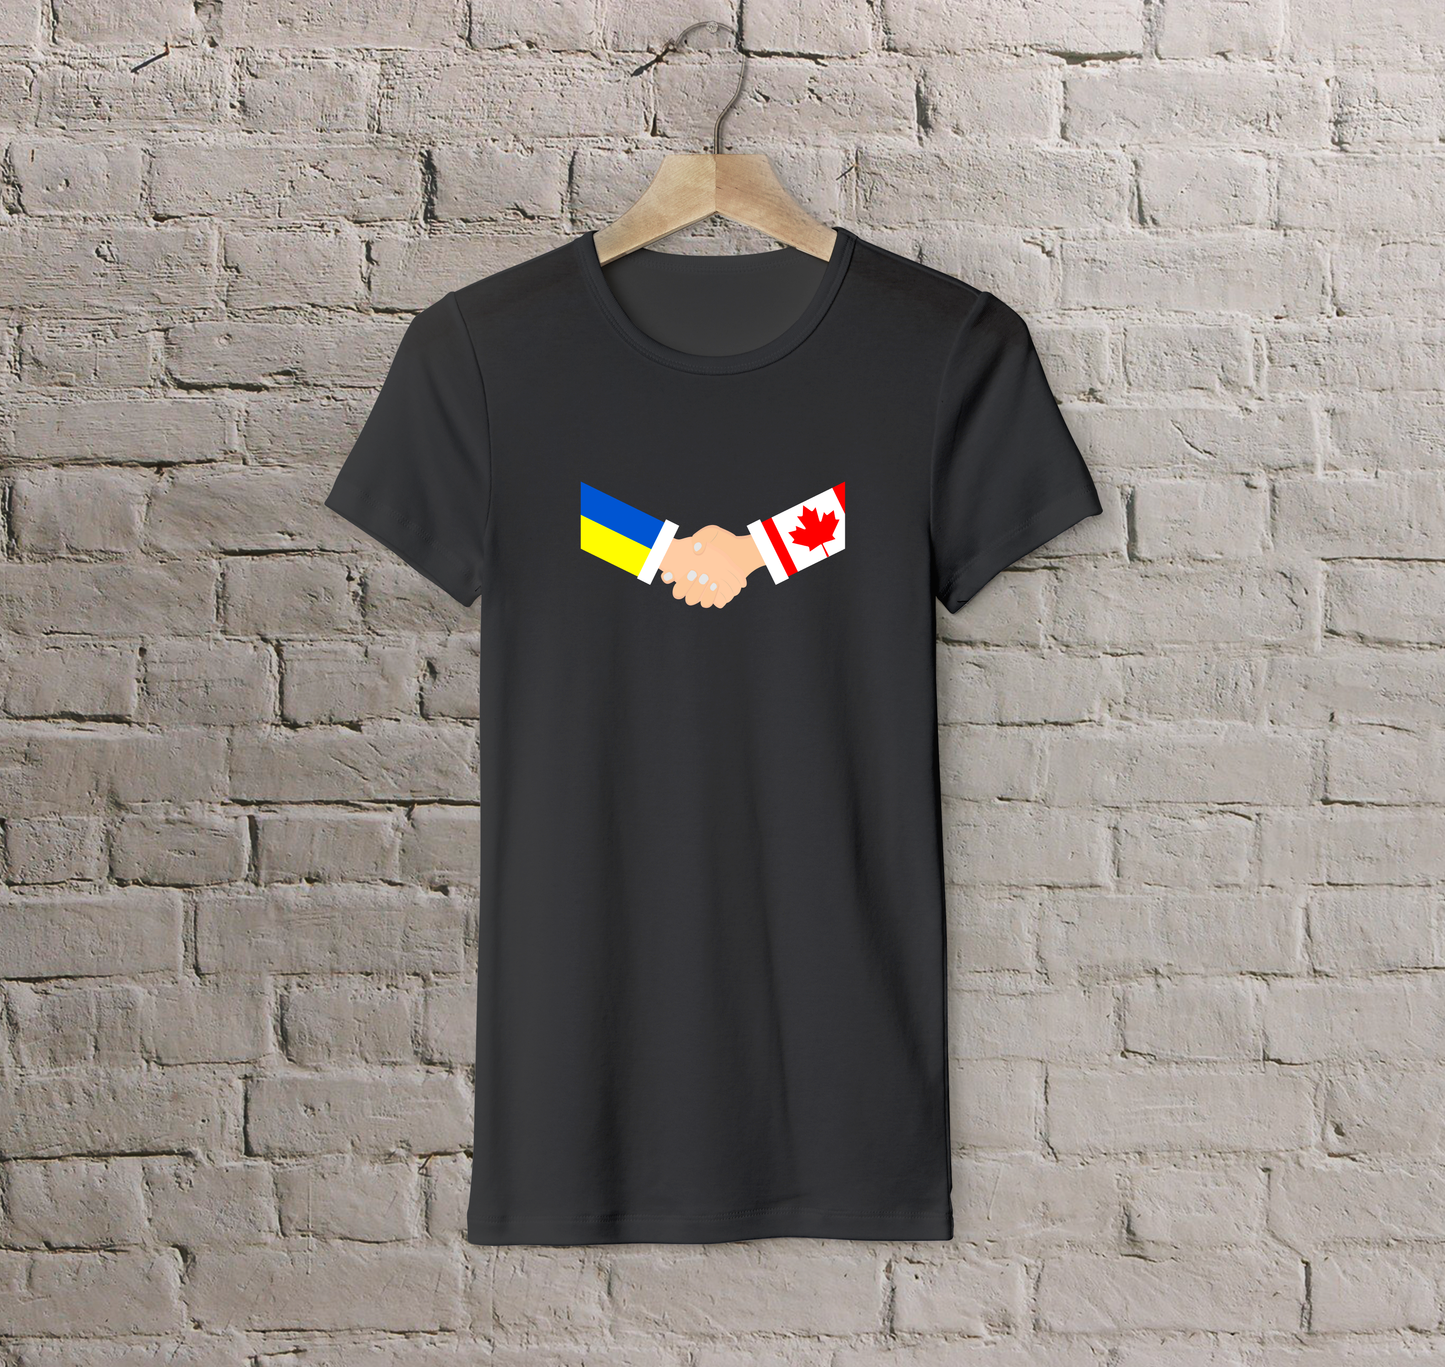 T-shirt Canada + Ukraine (handshake)